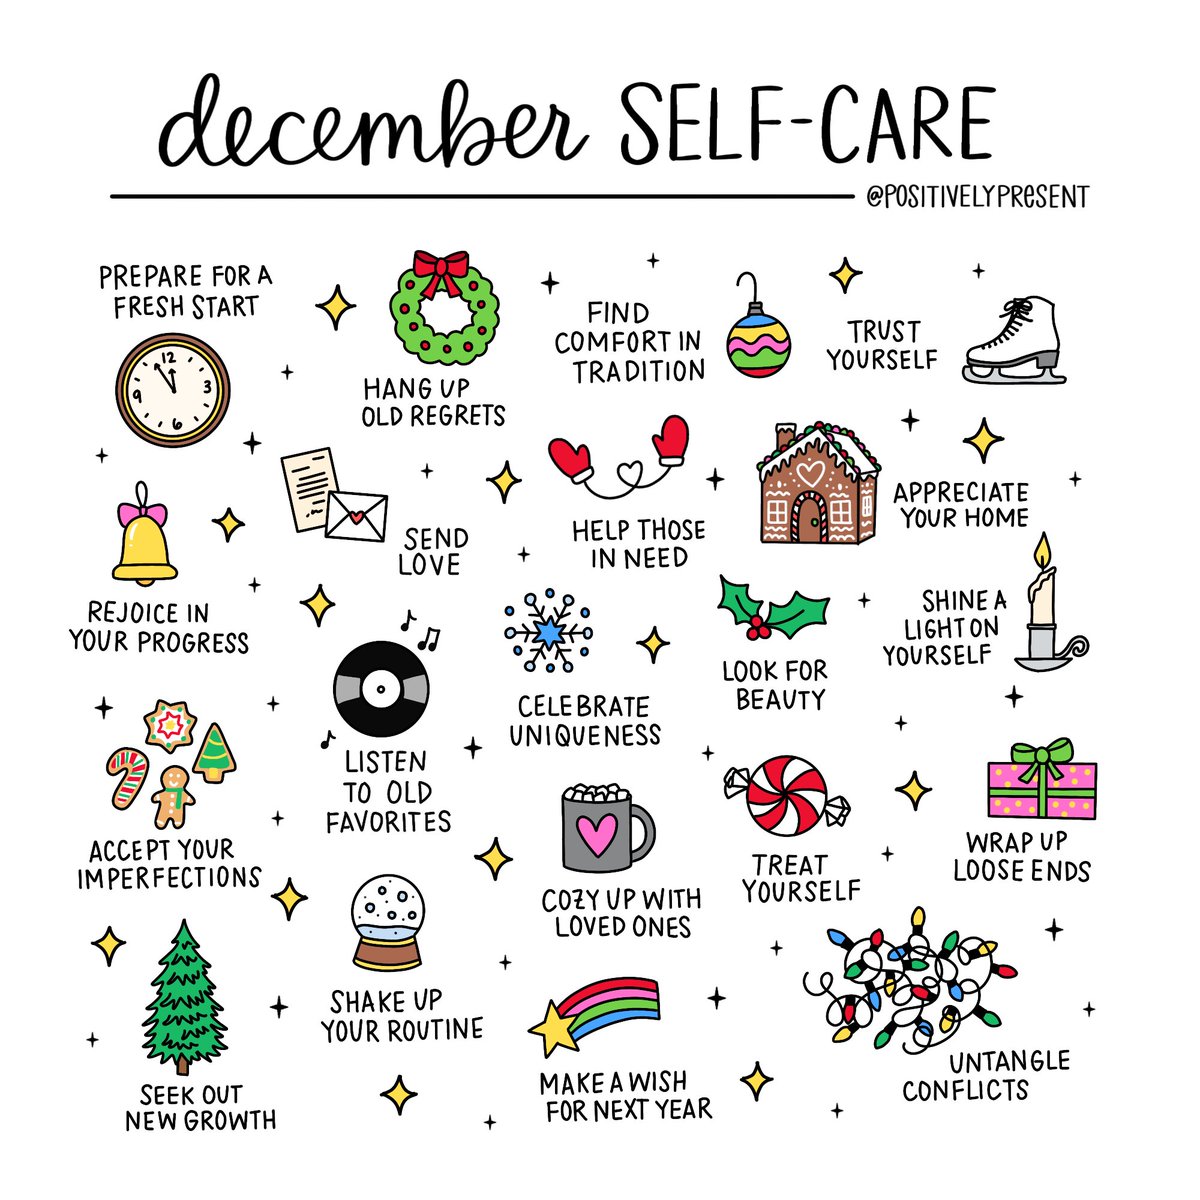 December self-care ideas! ❄️